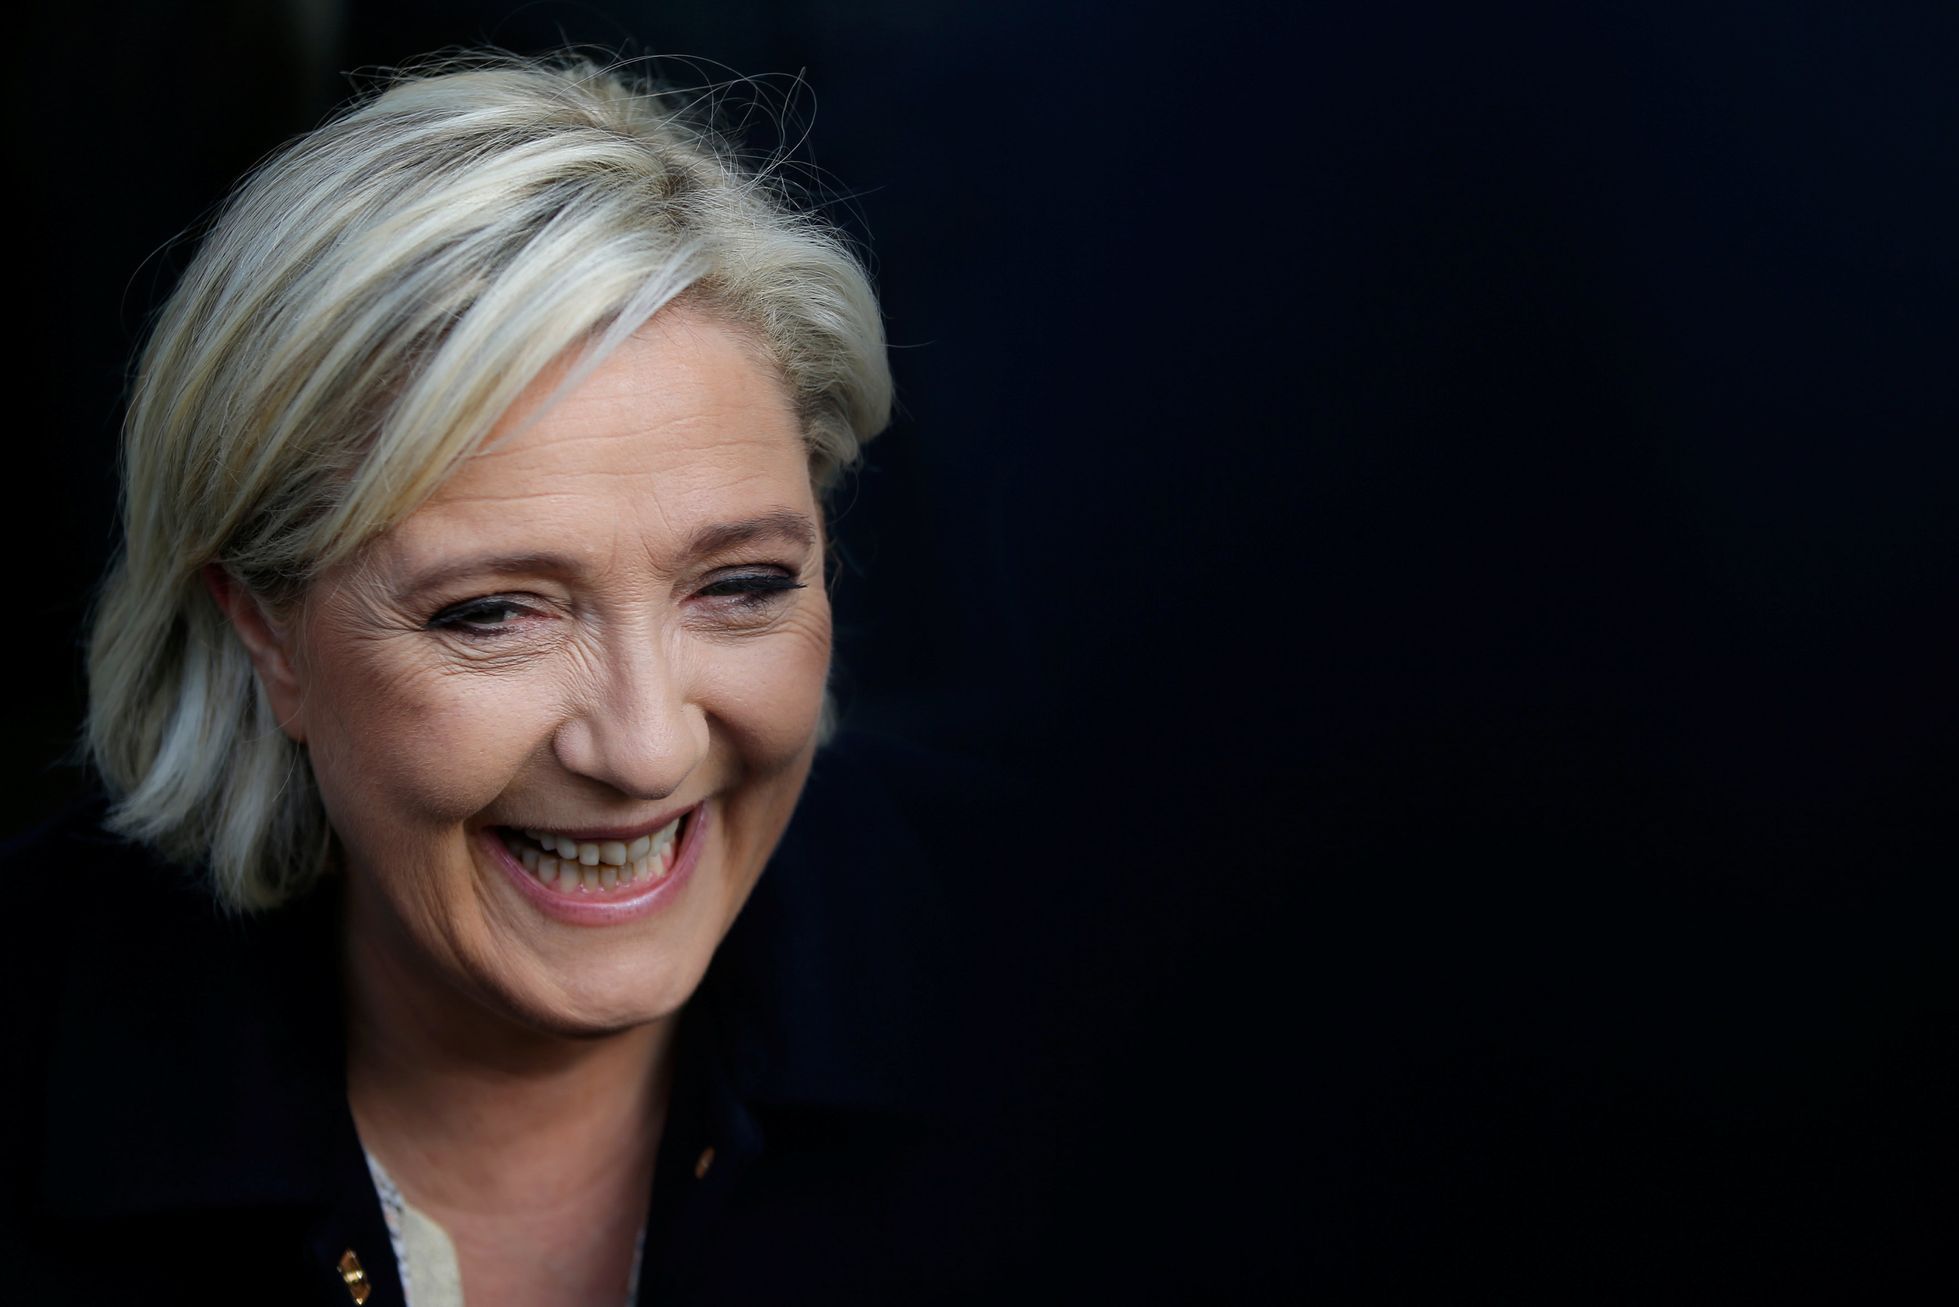 Marine Le Penová, kandidátka na prezidenta Francie